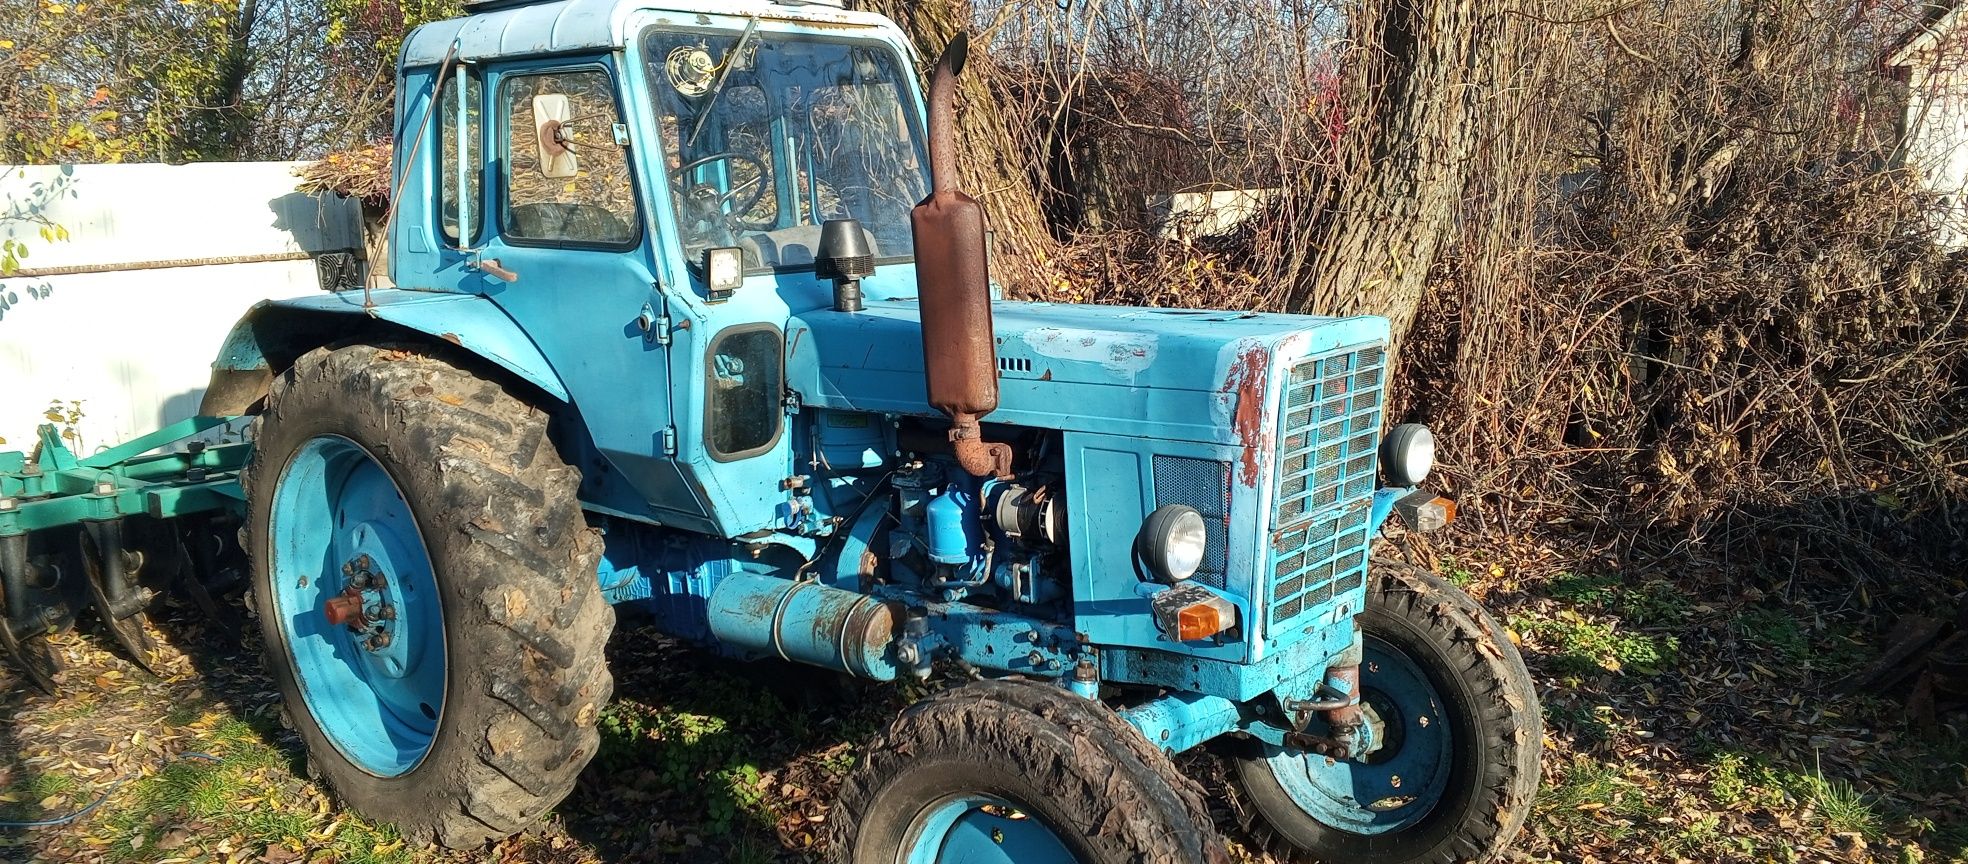 Продам Трактор МТЗ-80